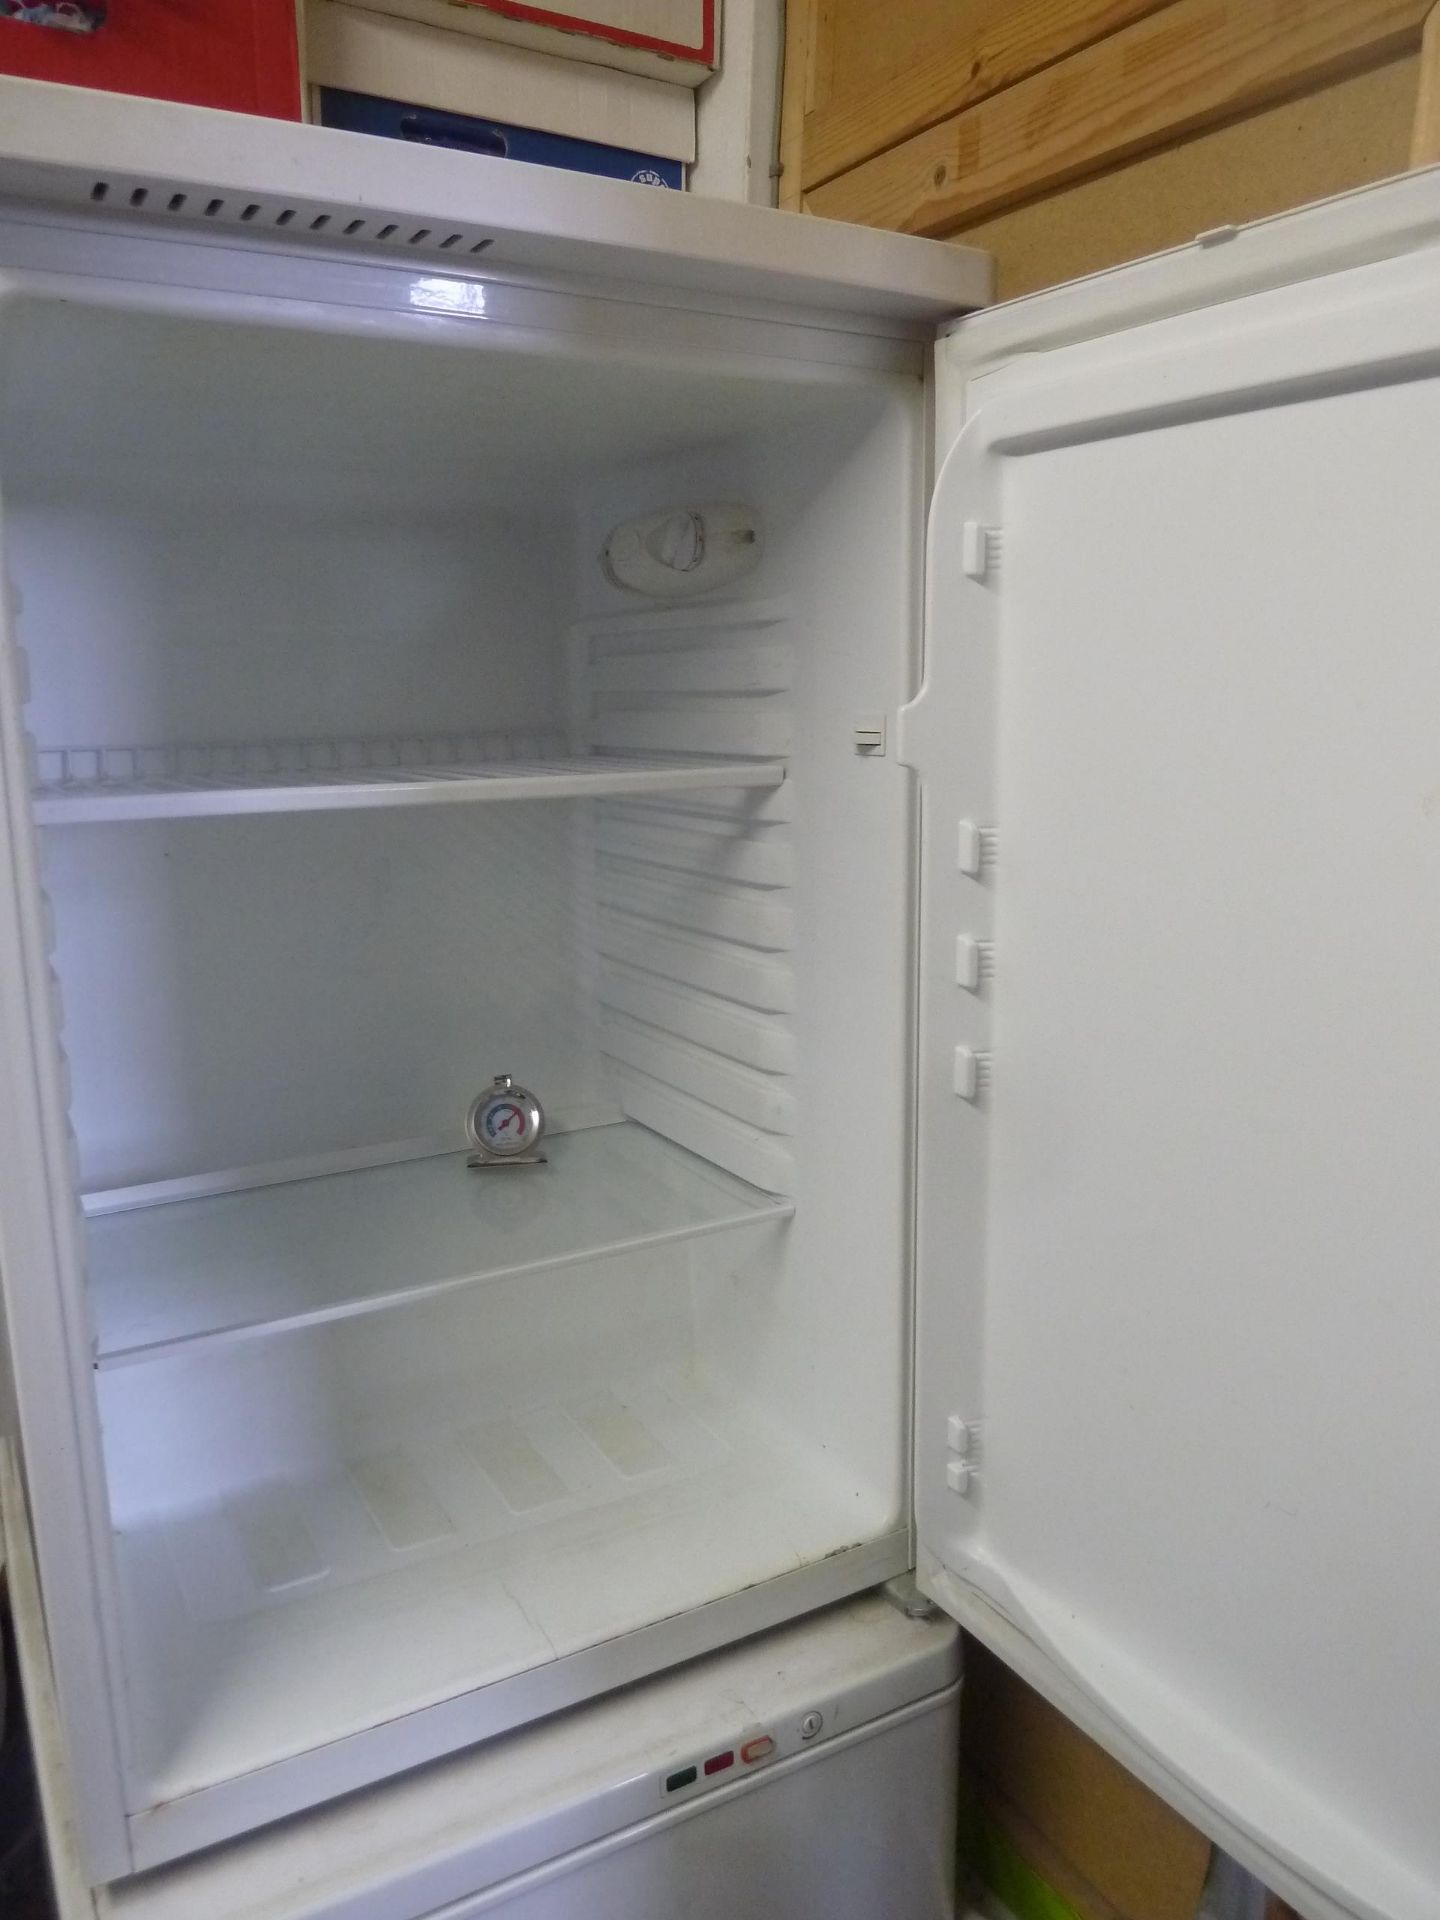 *Frigidaine RL6003B under counter domestic fridge - Image 3 of 3